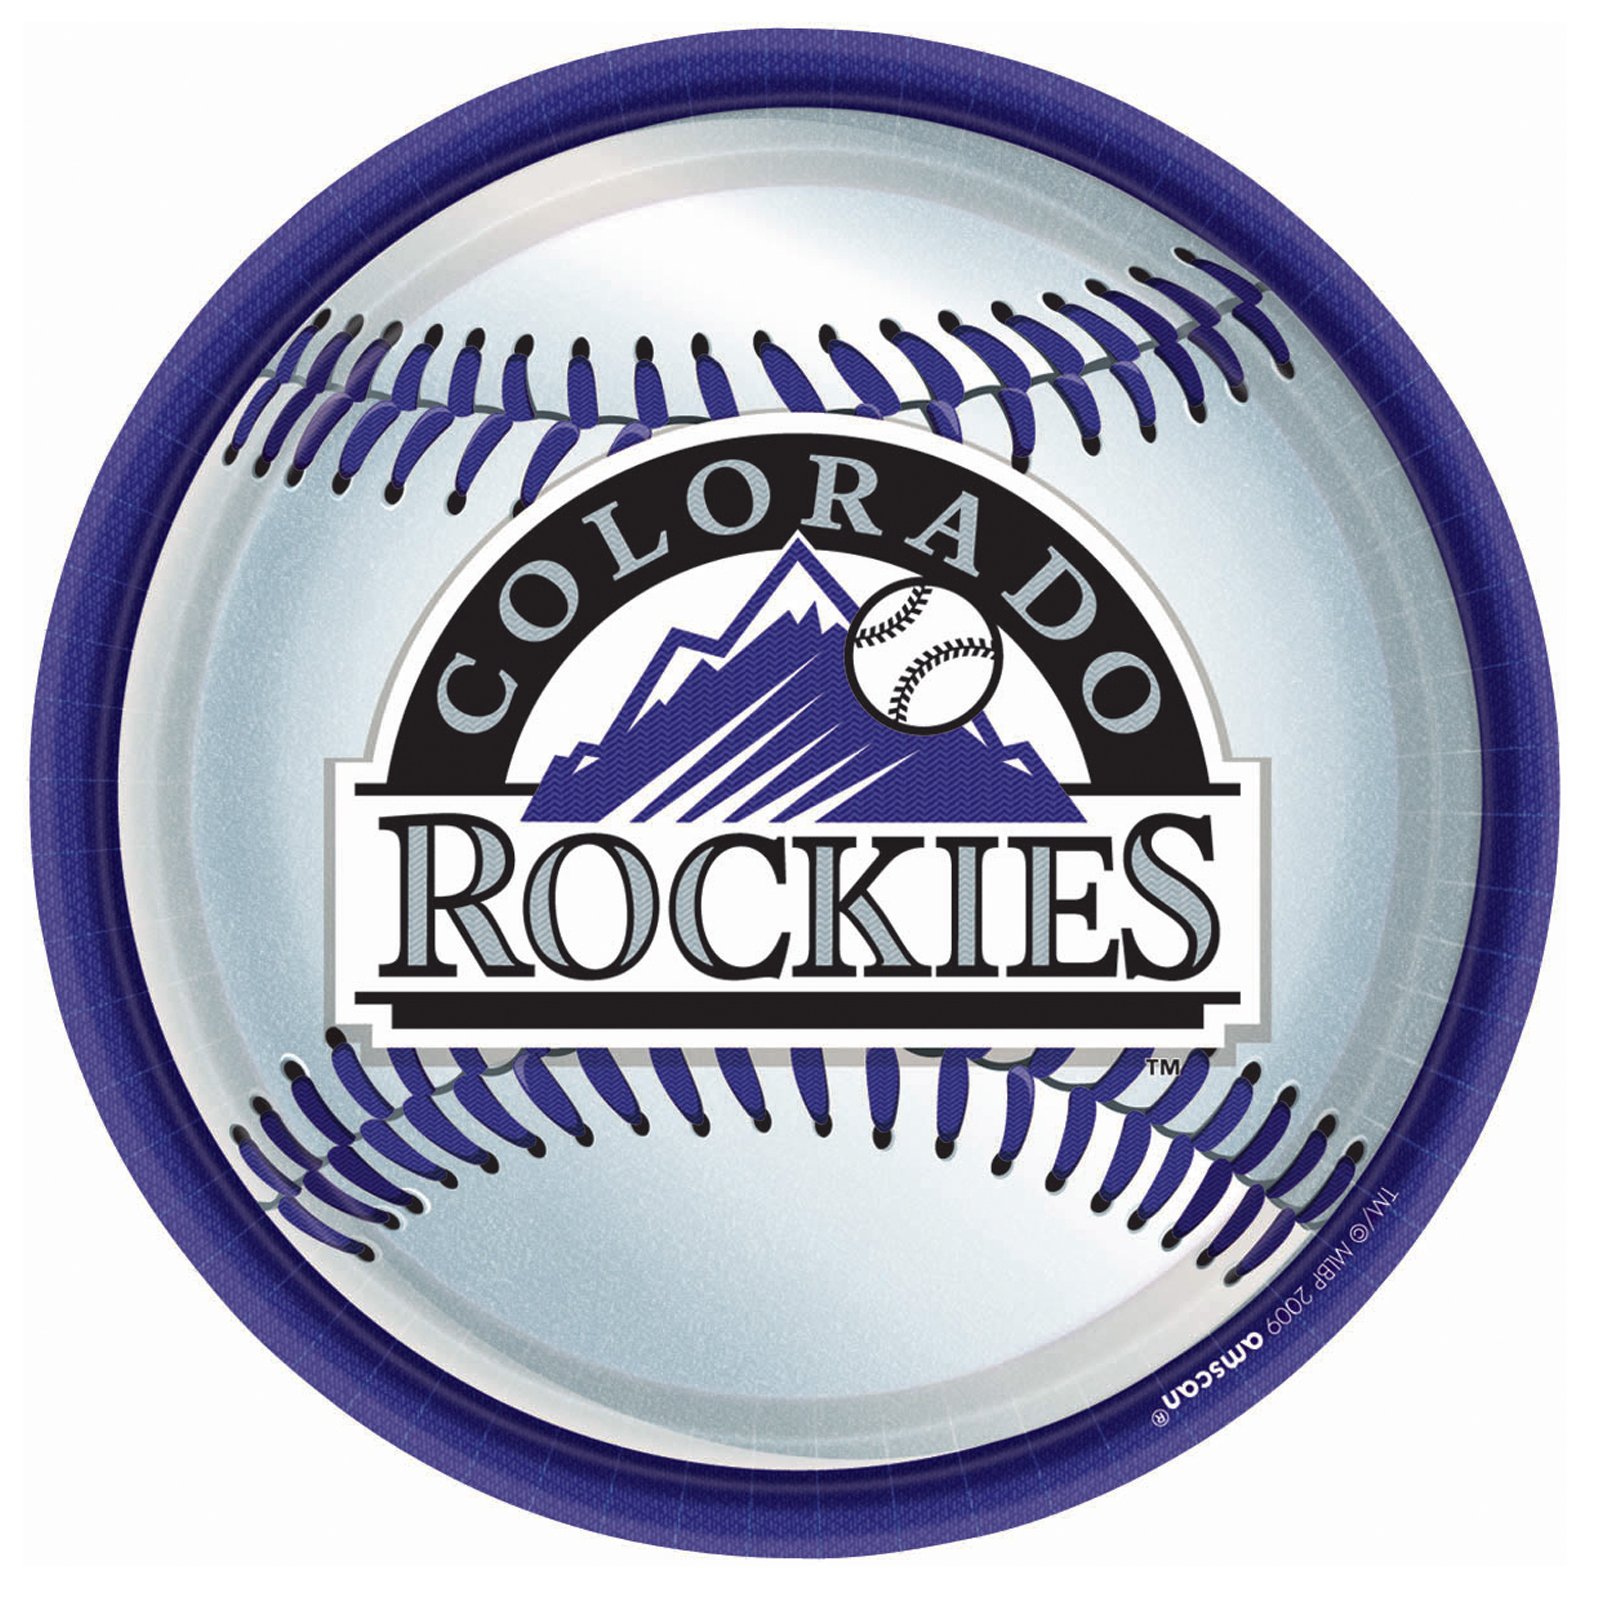 Amazing Colorado Rockies Pictures & Backgrounds - Baseball Colorado Rockies Logo - HD Wallpaper 